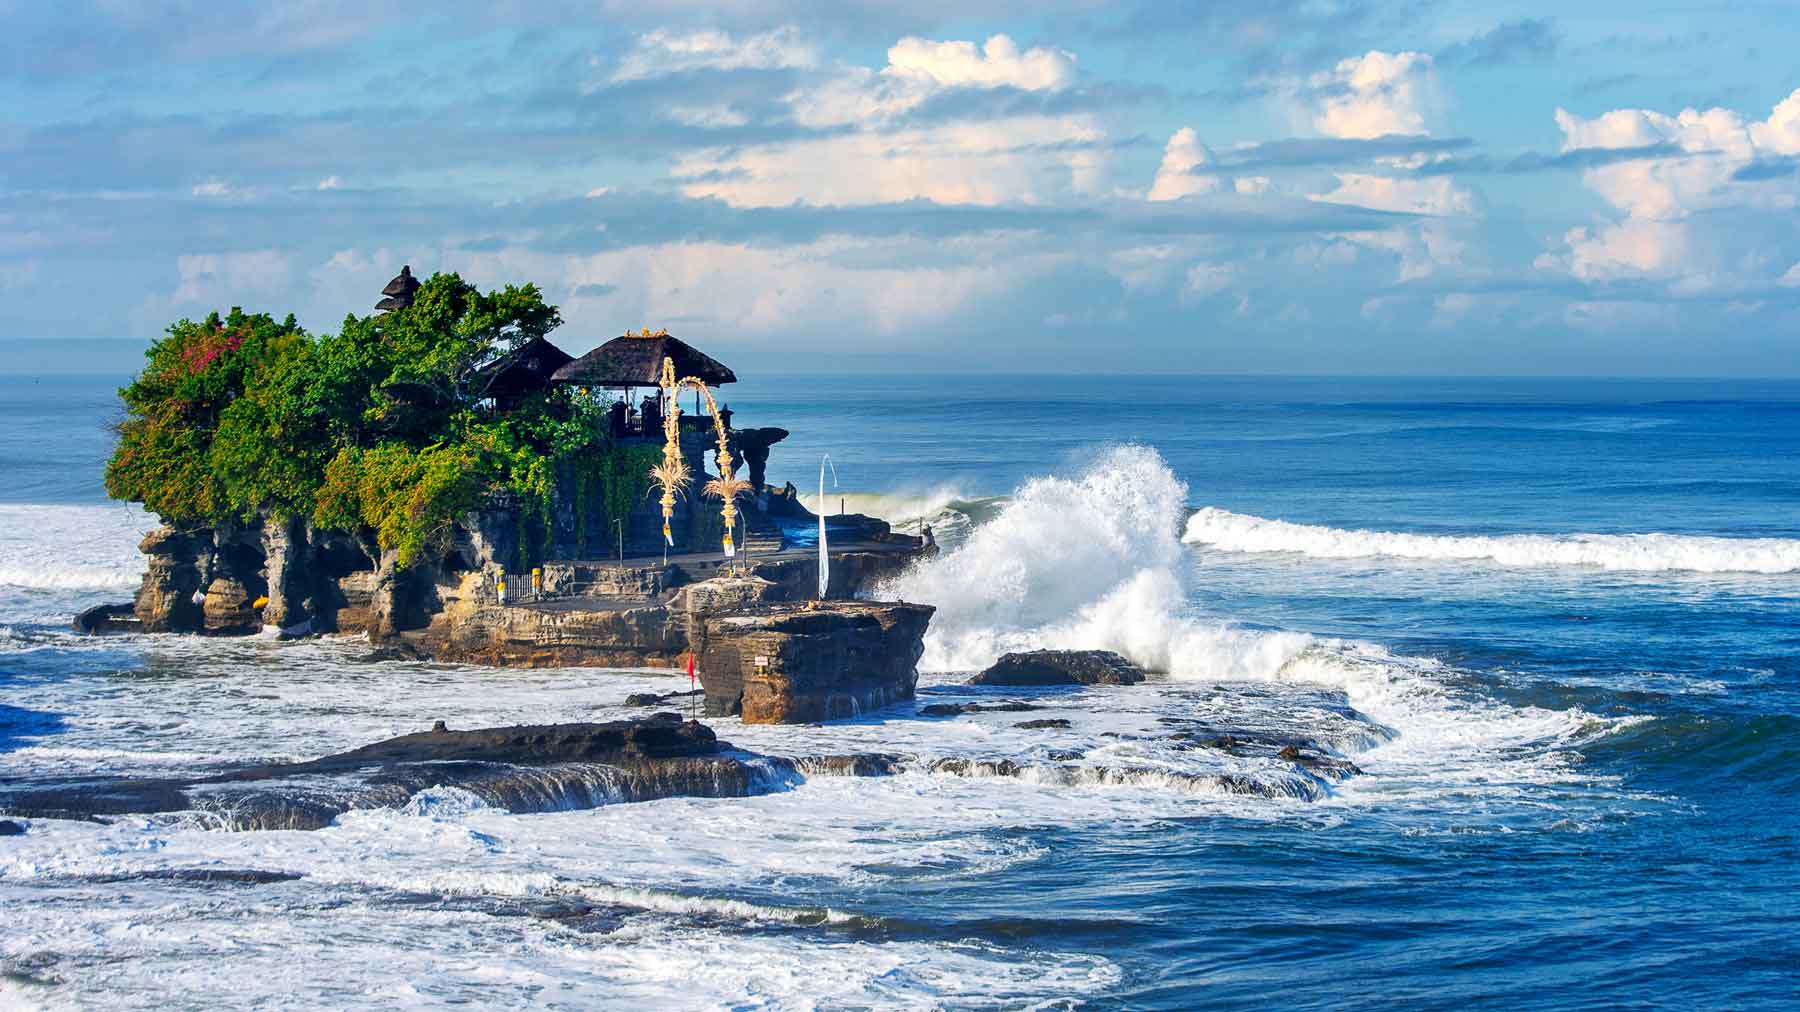 Tempat Wisata Yang Wajib Dikunjungi Di Bali Homecare24